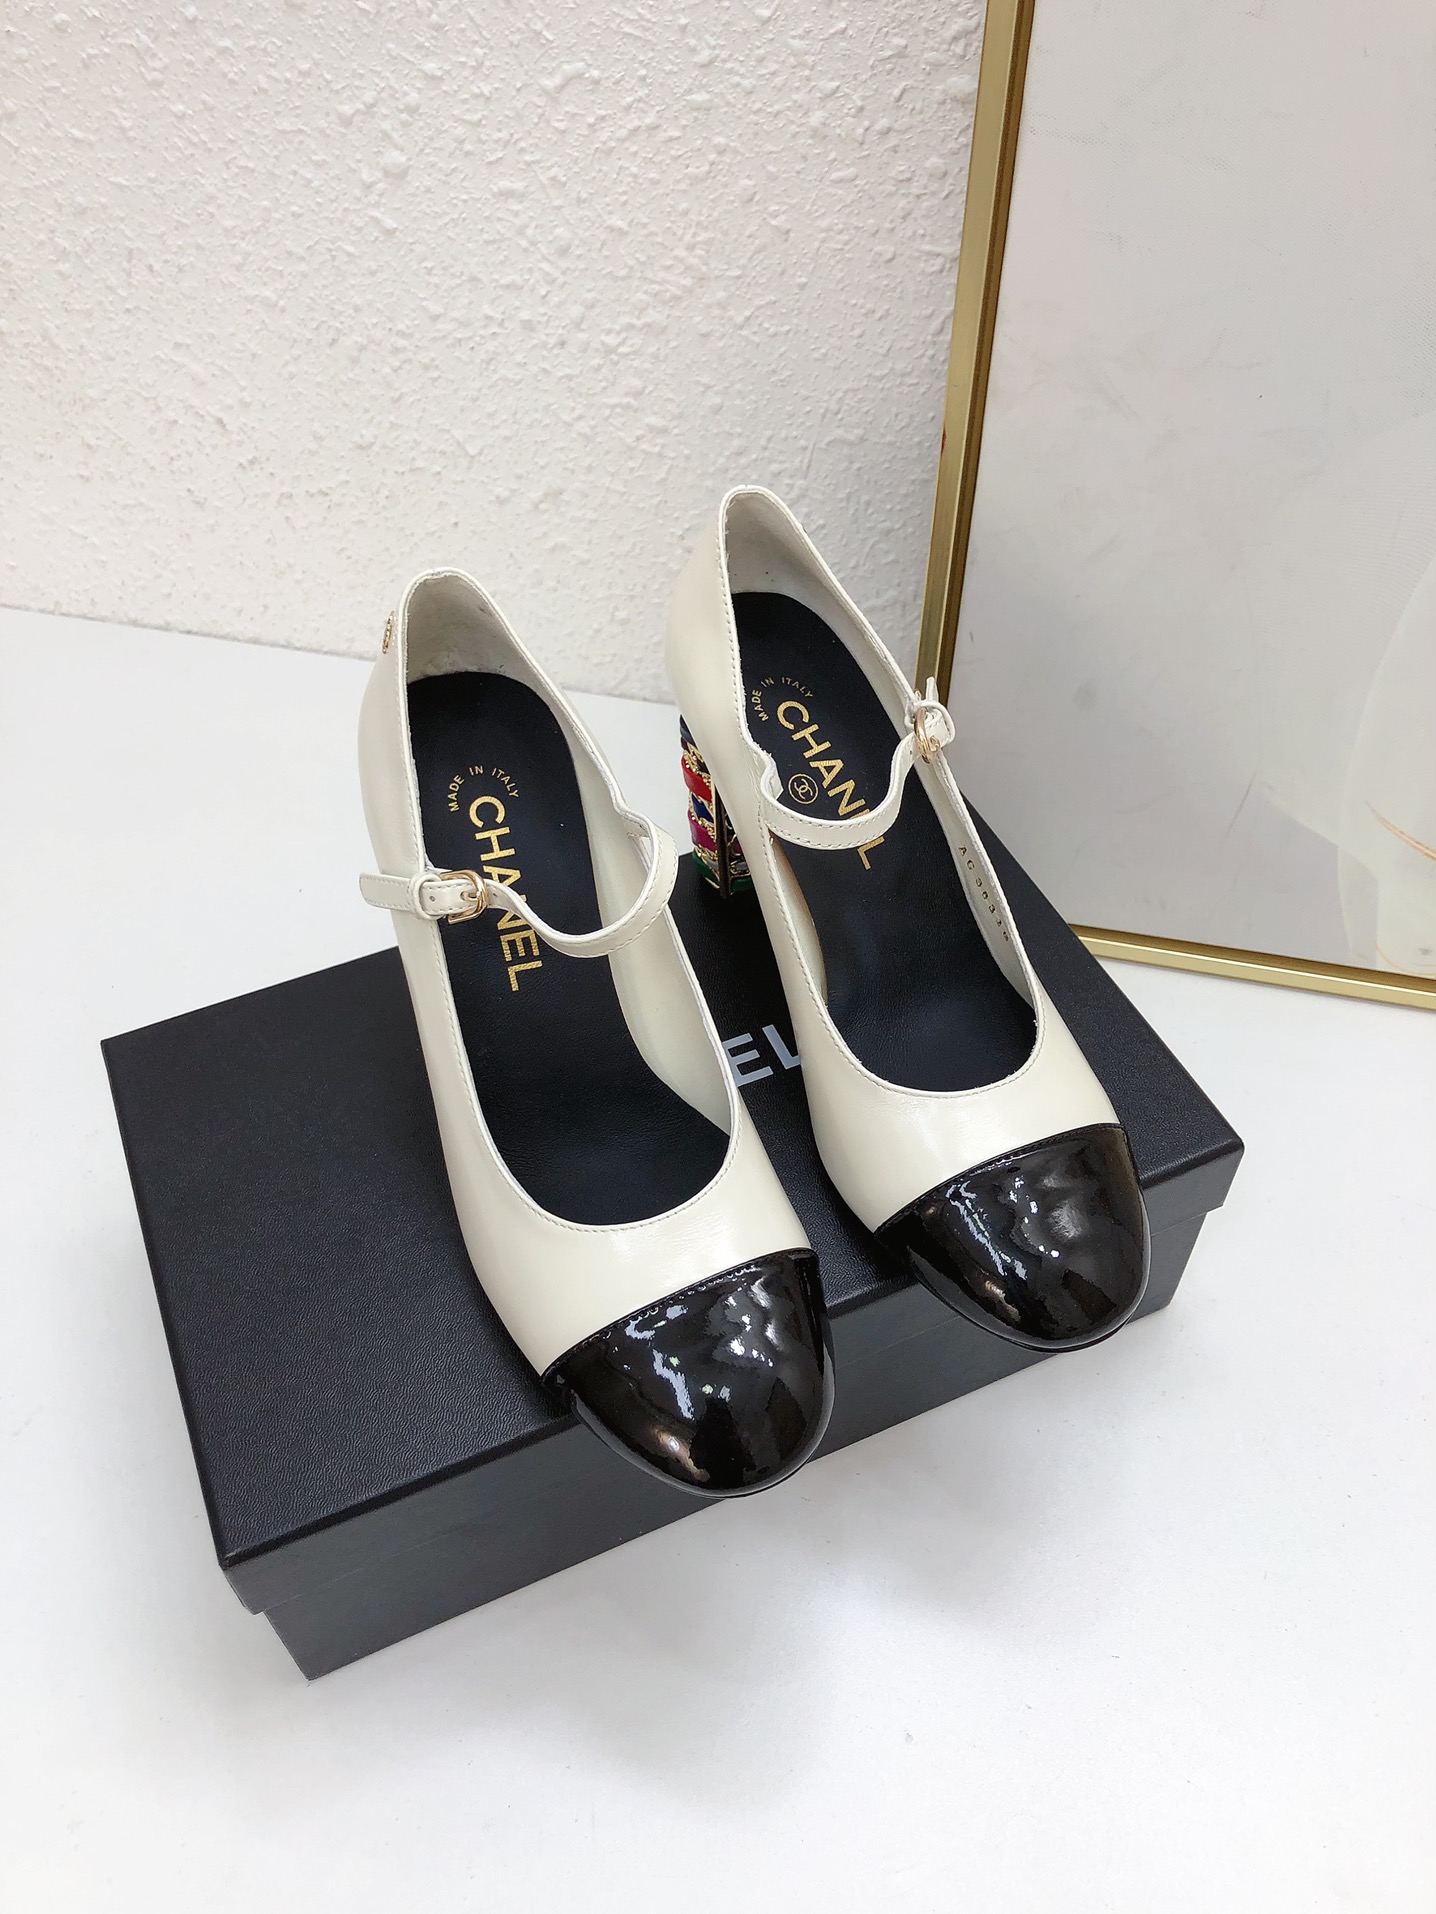 Chanel Zapatos Sandalias Pantuflas Comprar en linea
 Dermis Piel de oveja Colección primavera – verano